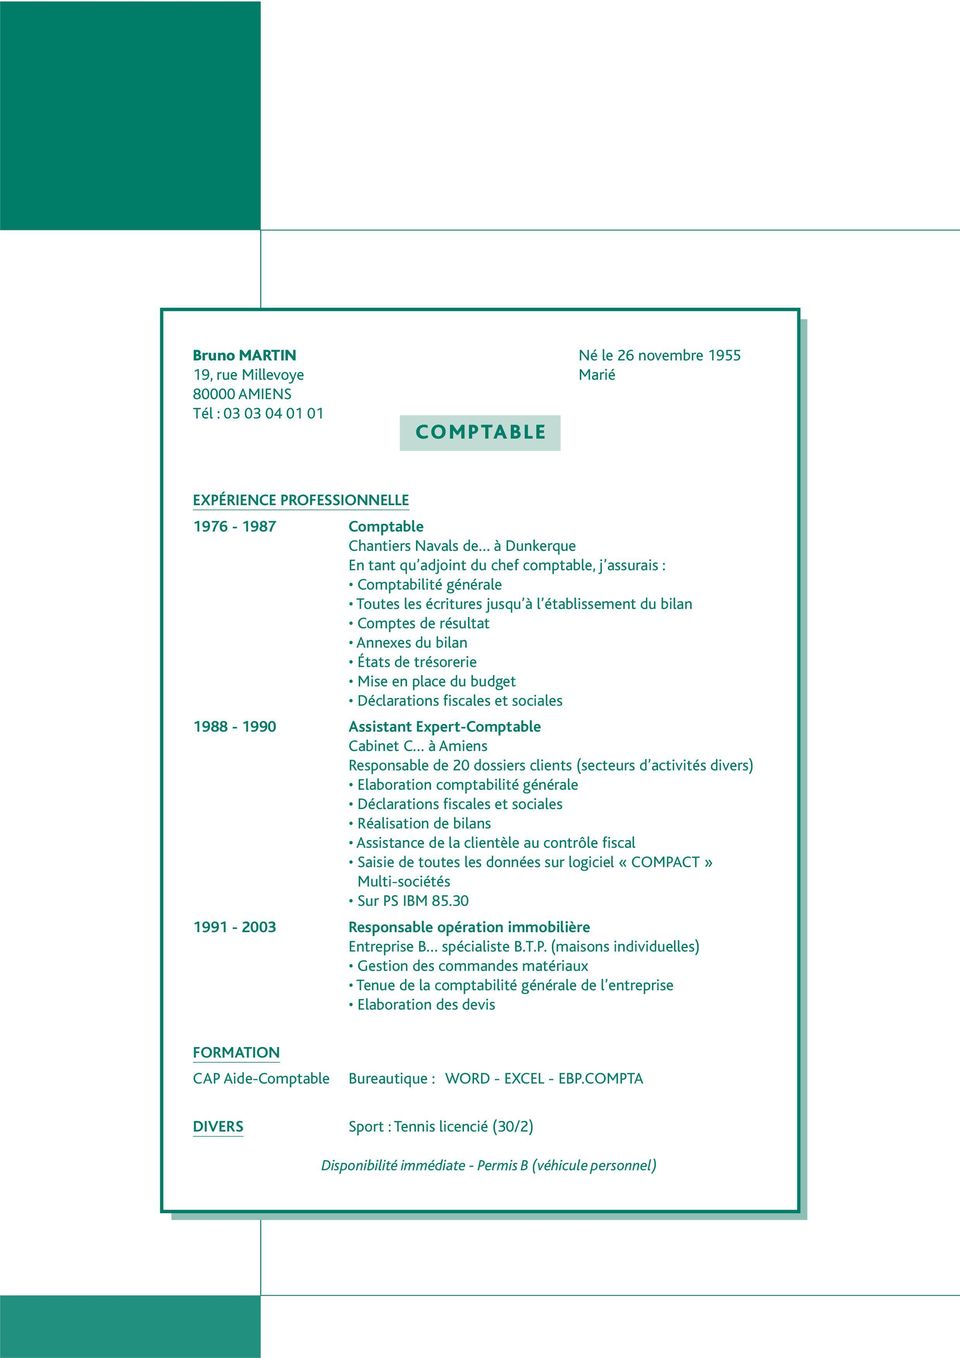 Déclarations fiscales et sociales 1988-1990 Assistant Expert-Comptable Cabinet C à Amiens Responsable de 20 dossiers clients (secteurs d activités divers) Elaboration comptabilité générale